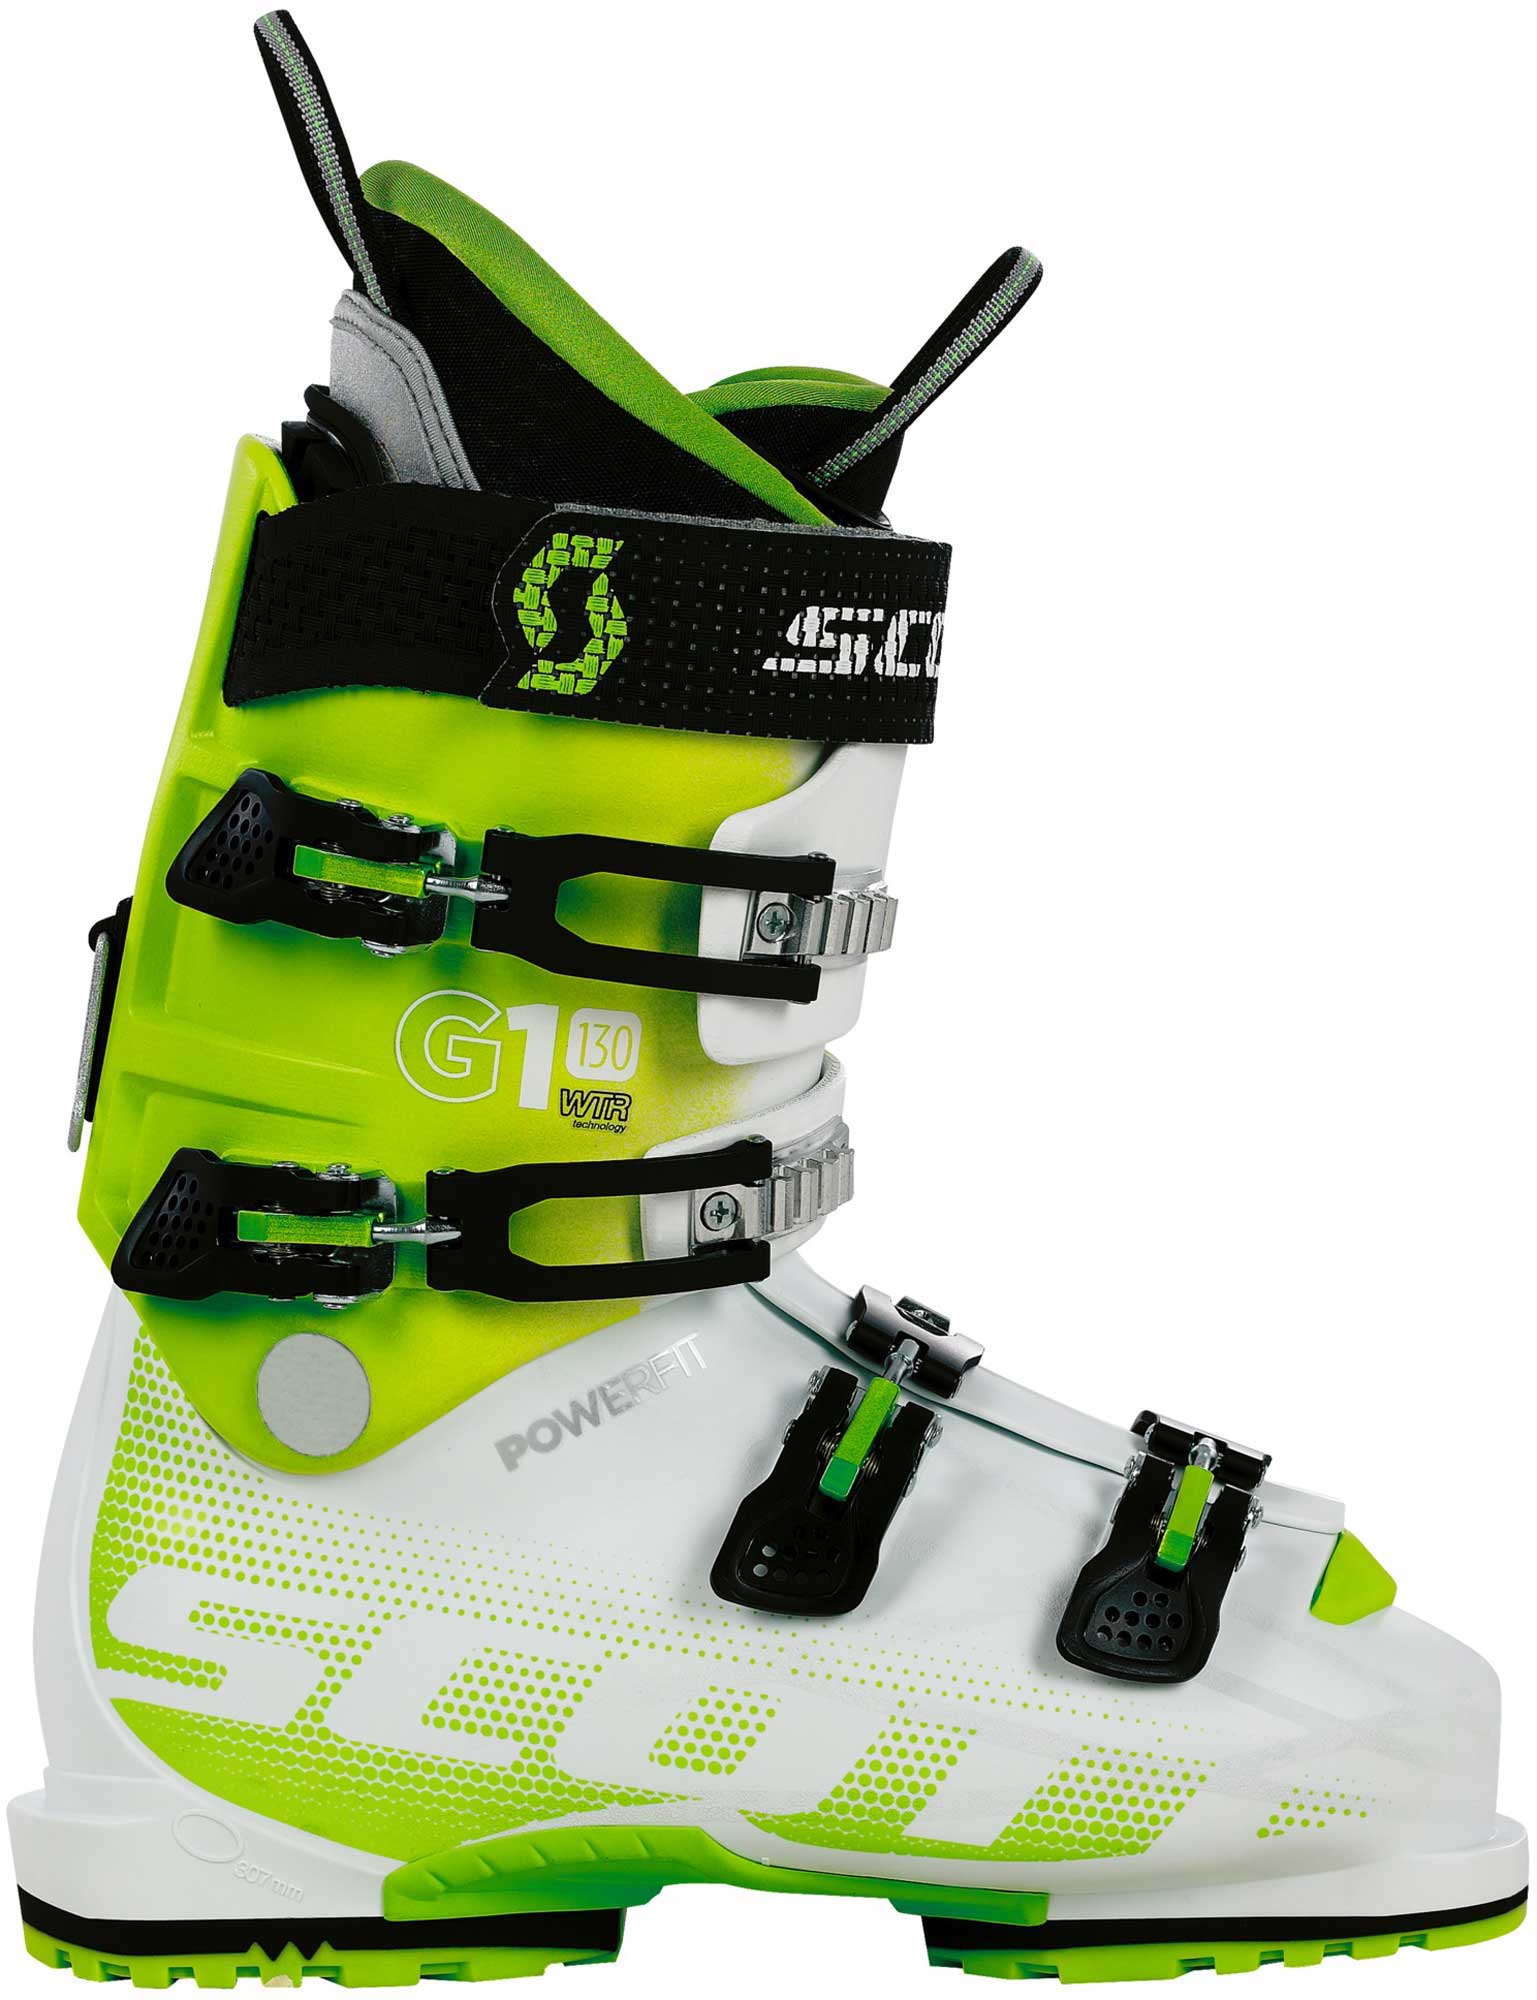 Freeride ski boots